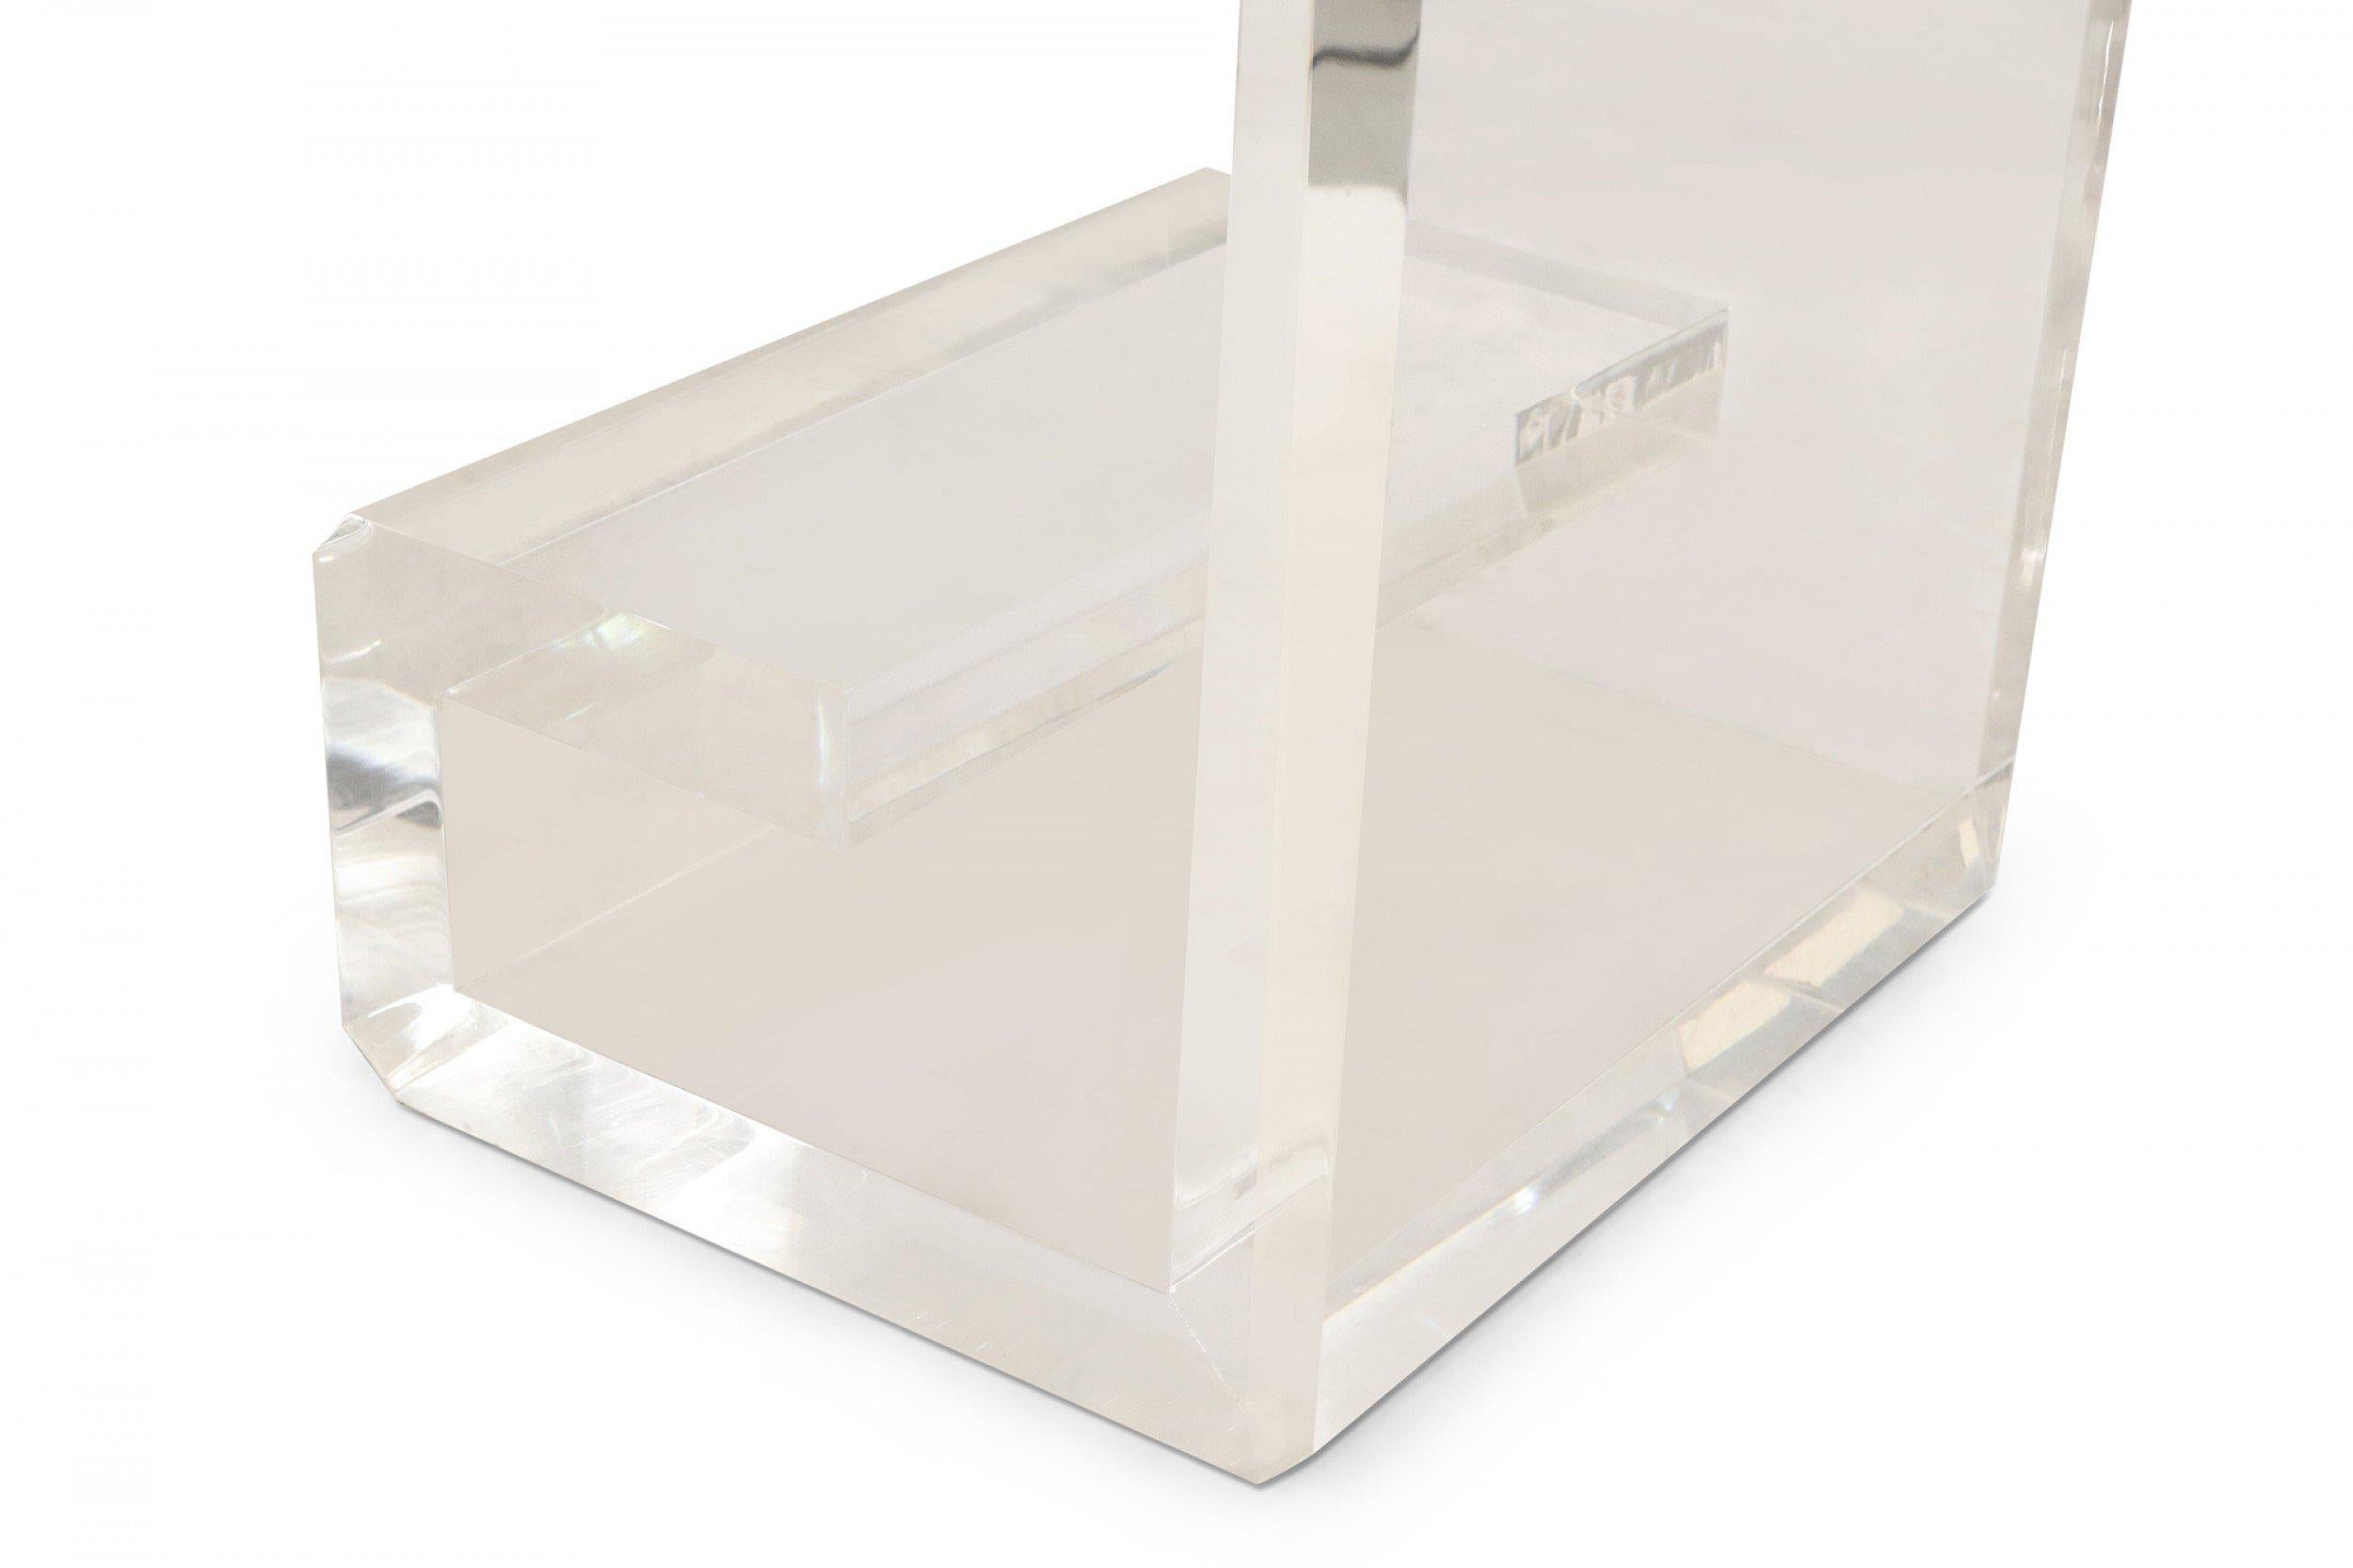 Zeitgenössischer Schreibtisch aus Lucit mit 3 eingelassenen, antikisierten Spiegelquadraten auf der Oberseite, einem flachen Glasfach/-regal und geometrischen, rollenförmigen Beinen. (entworfen von Geoffrey Bradfield).
 